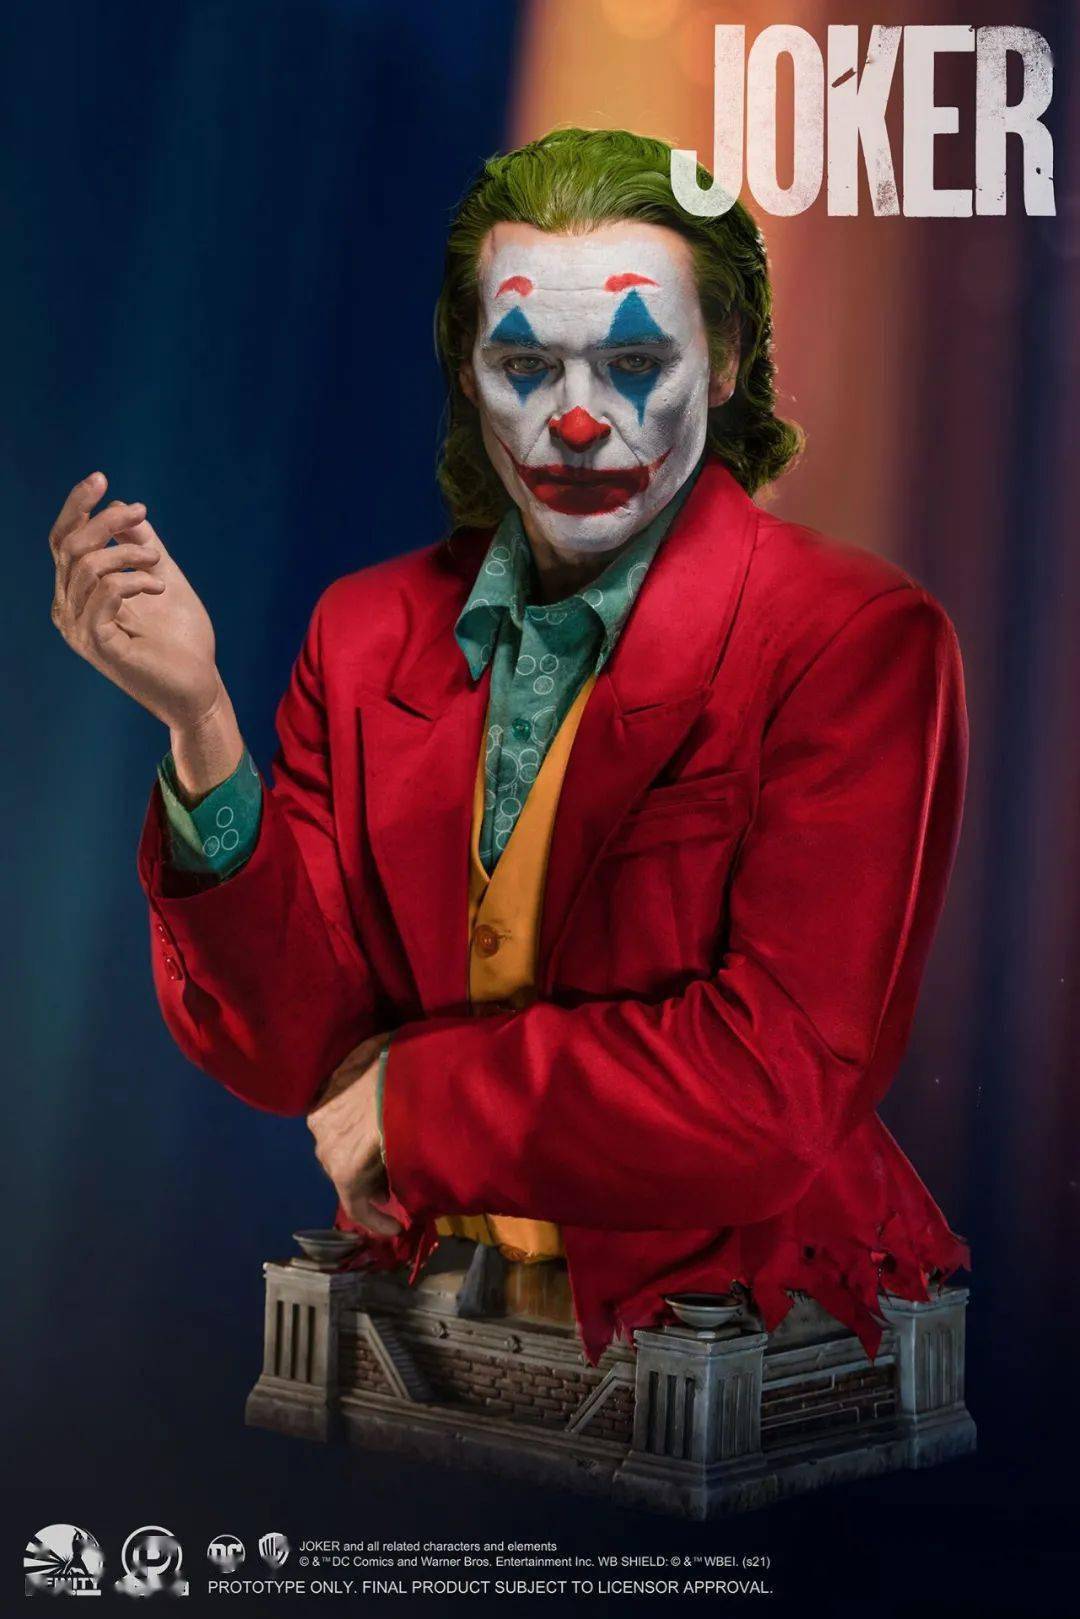 完美的演绎了亚瑟·弗莱克从喜剧演员一步步转变成哥谭市的小丑的